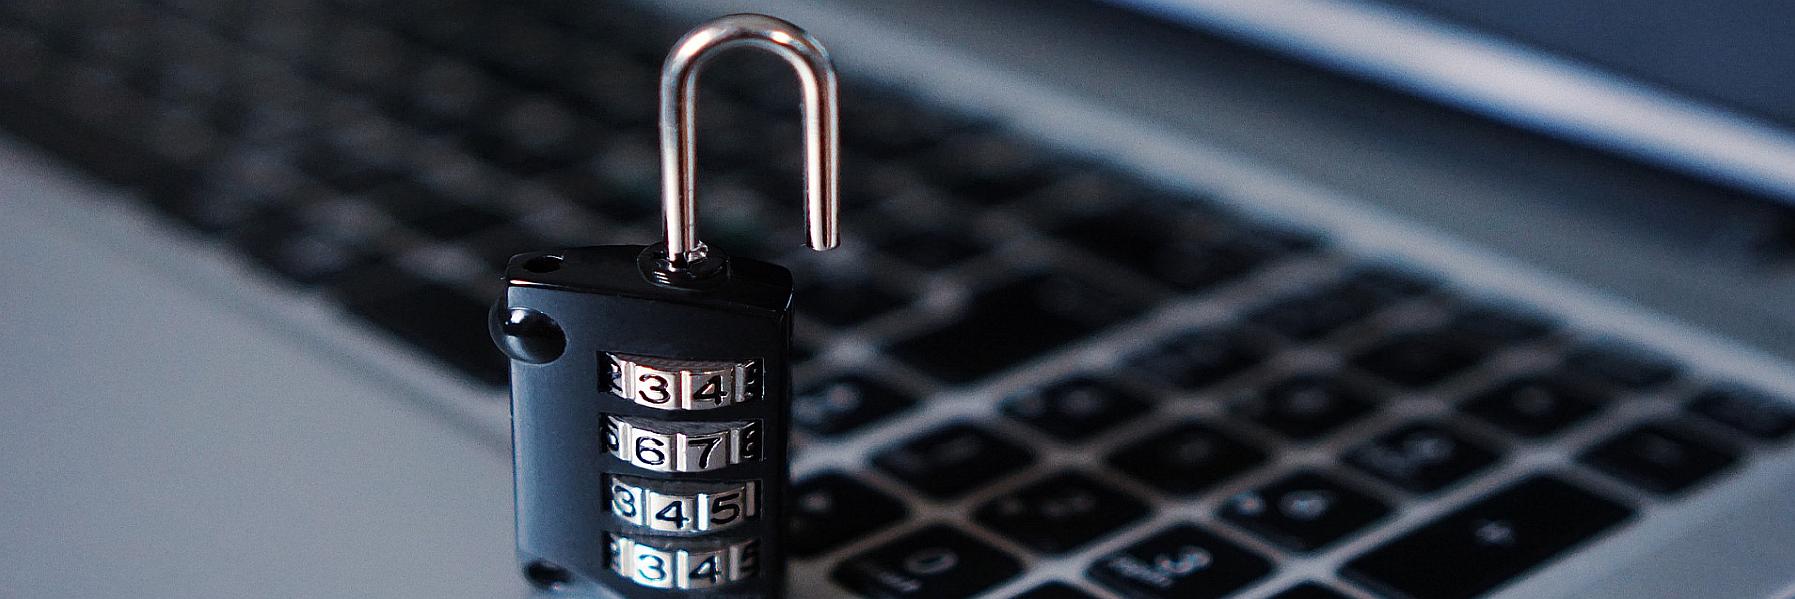 Cybersicherheit: E-Mailsicherheit und Passwortschutz mal ganz praktisch 